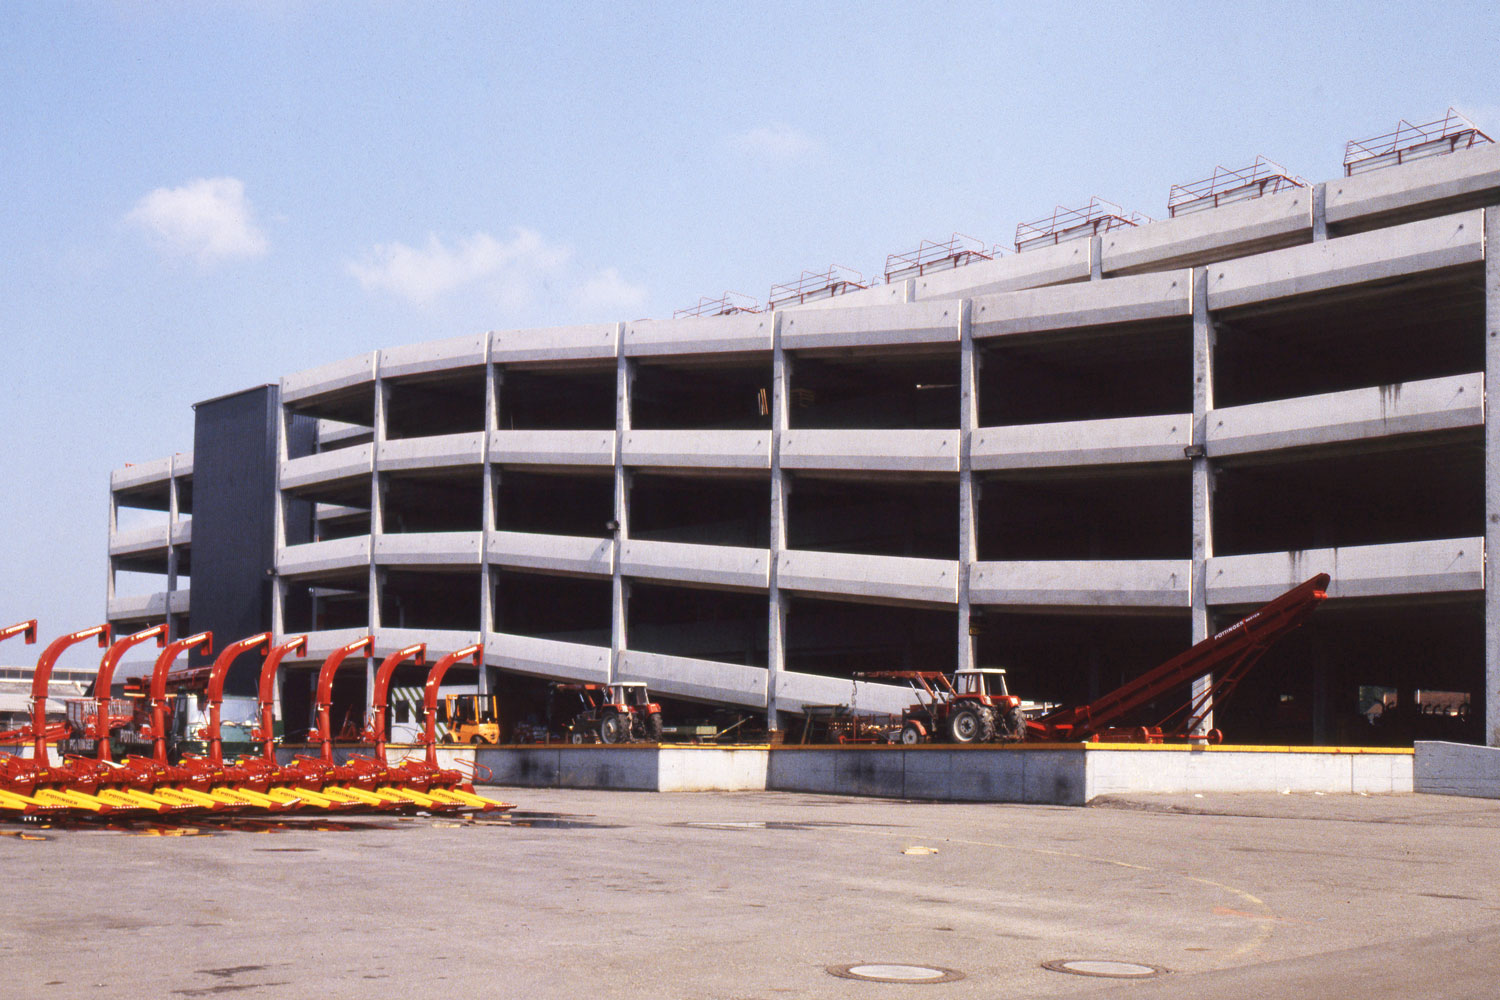 Potrebbe sembrare senz'altro un parcheggio: il magazzino entrato in funzione nel 1977.